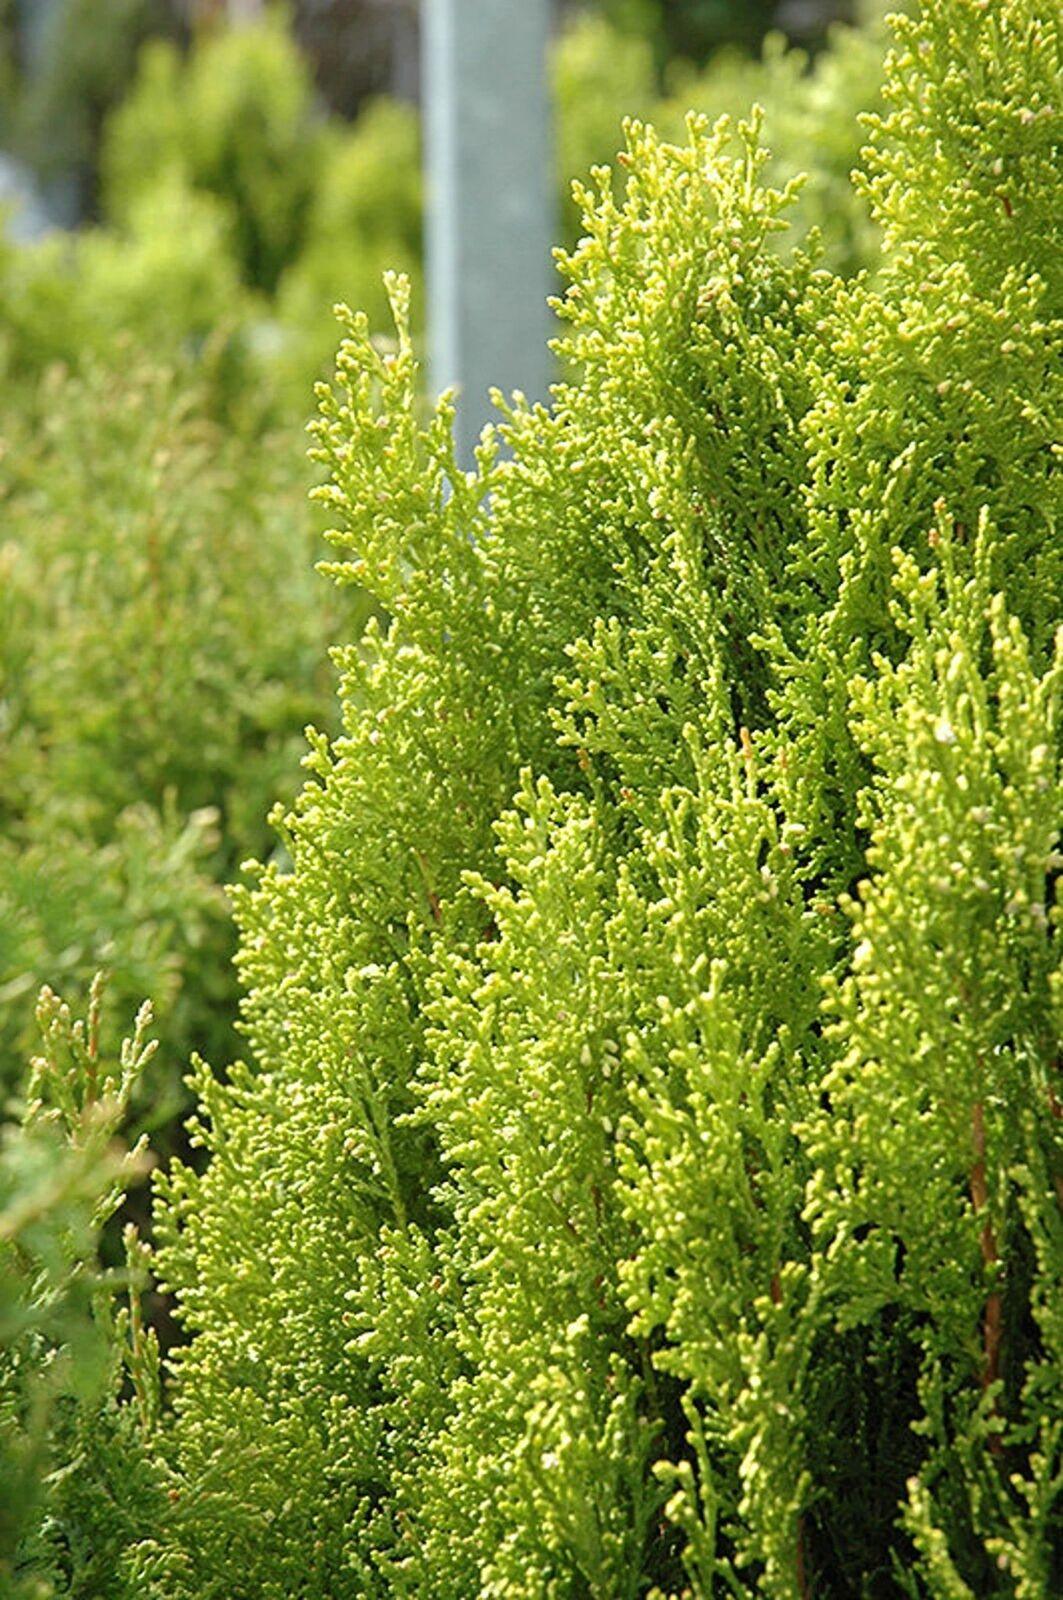 Berckmans Golden Arborvitae Shrub/Bush - 4-6" Tall Seedling - Live Plant - 3" Pot - The Nursery Center